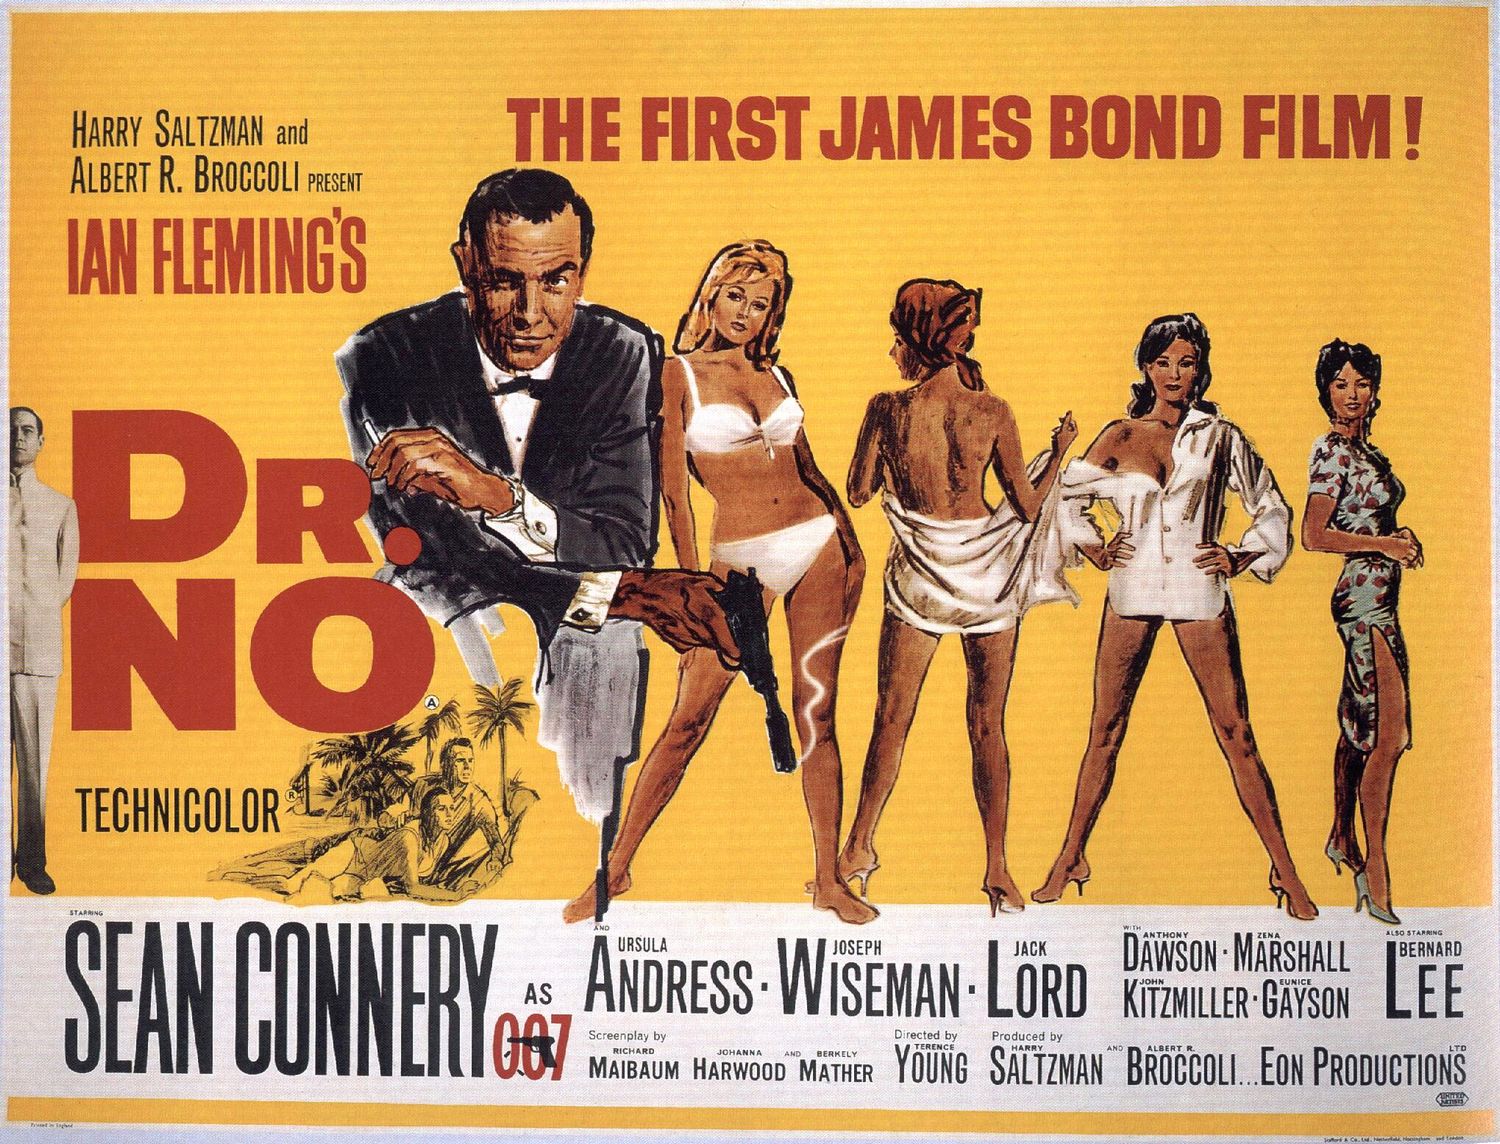 Non è una delle locandine vintage dei film horror di cui abbiamo parlato, ma la prima locandina del primo film di James Bond è bellissima  